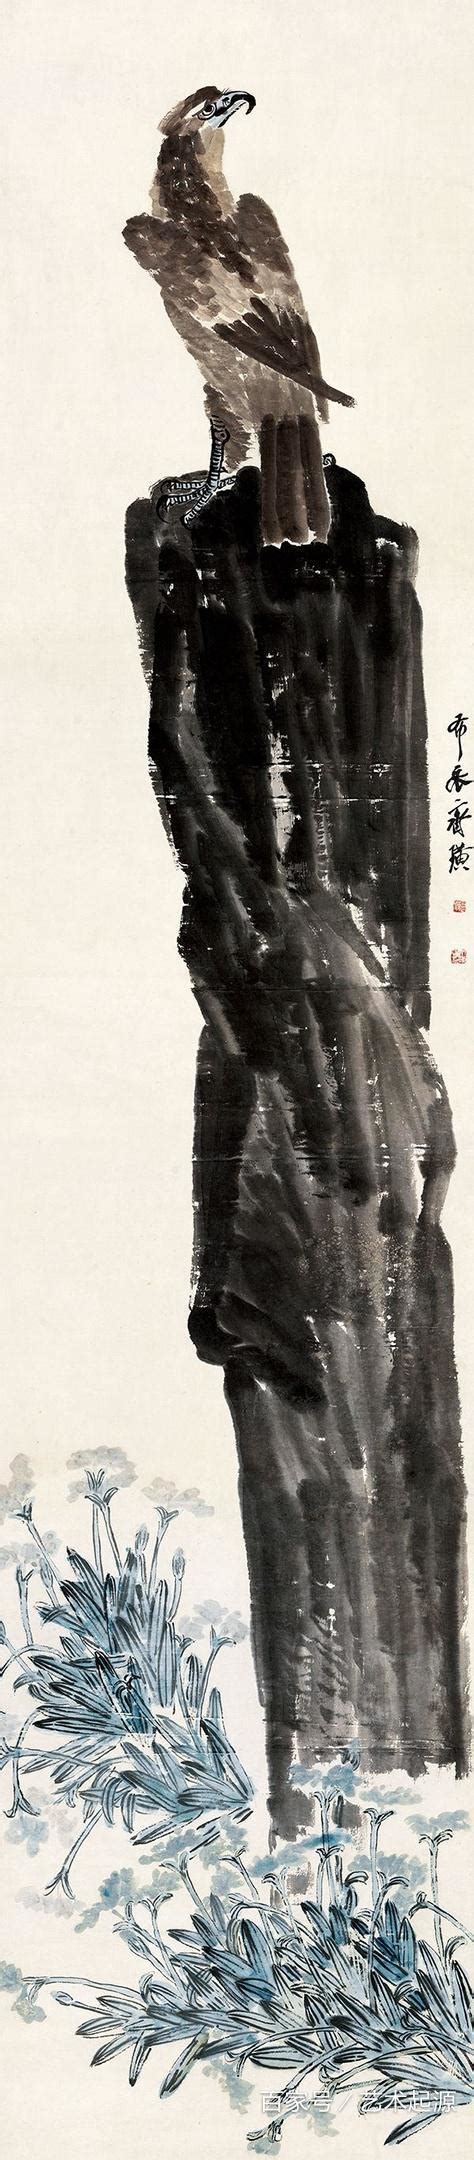 花好年丰：北京画院藏齐白石艺术展 - 每日环球展览 - iMuseum